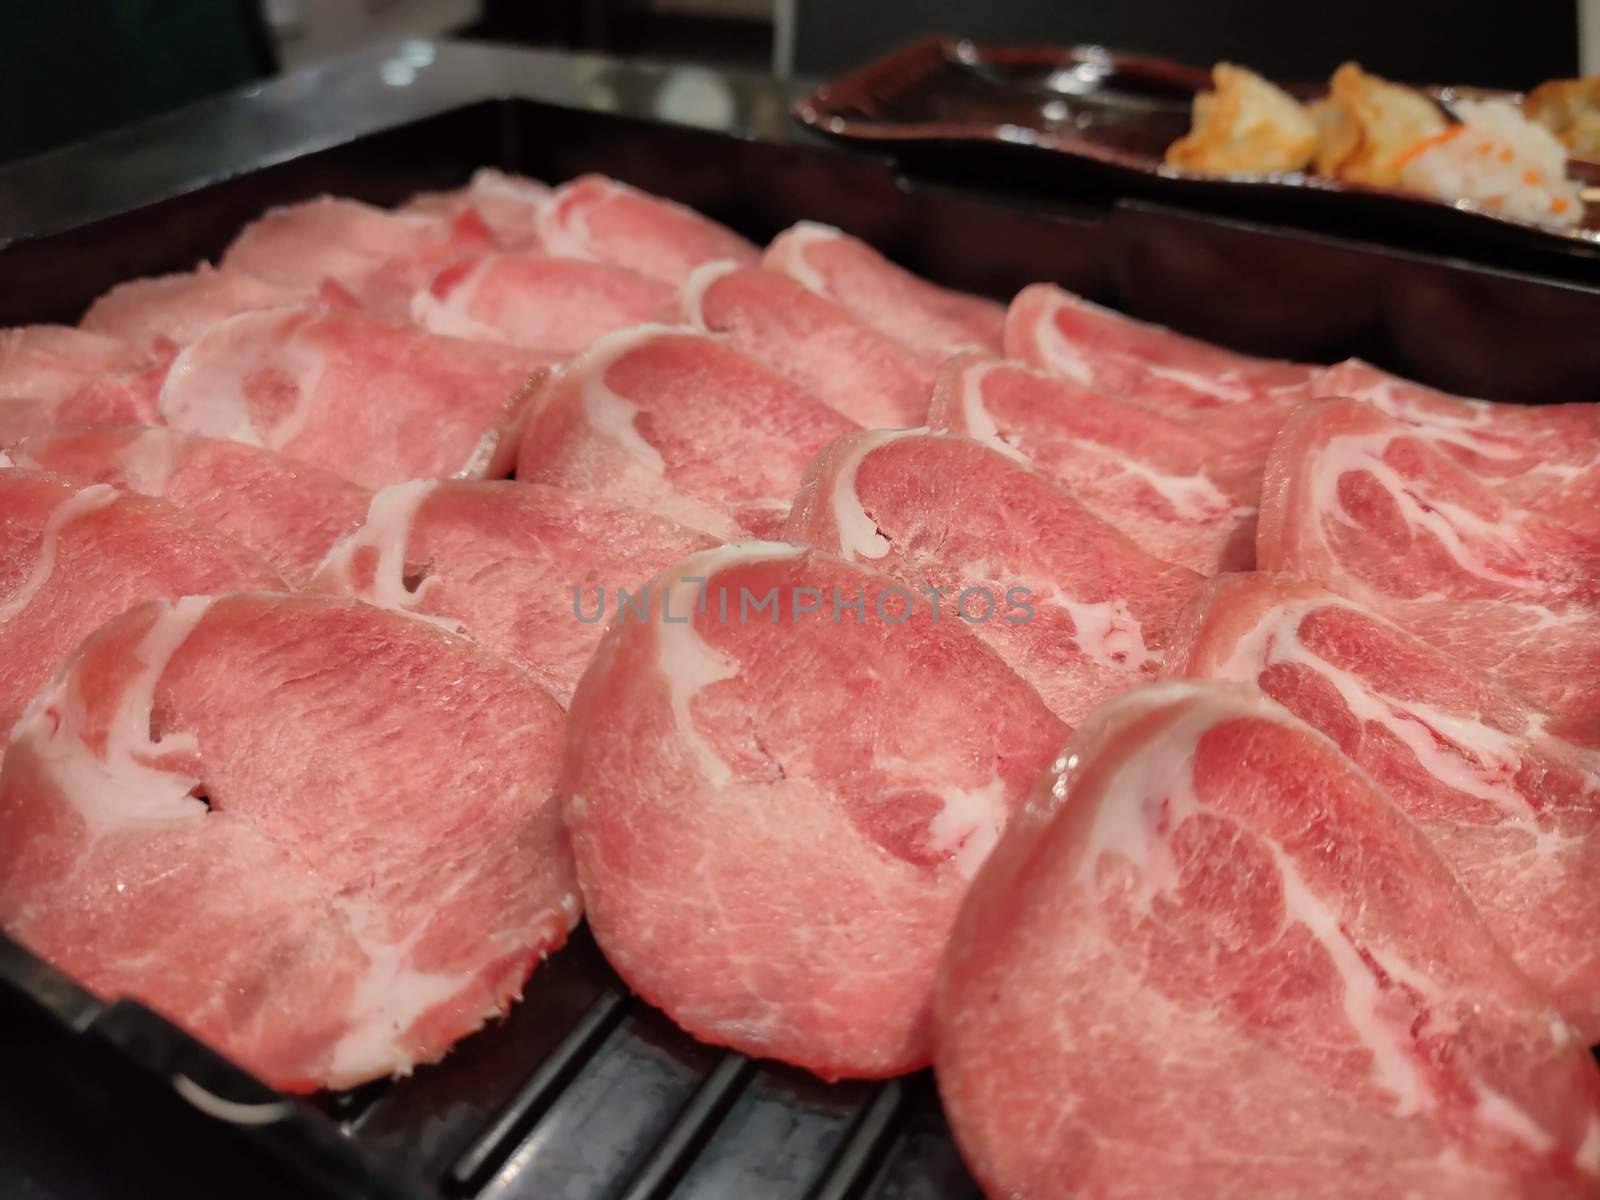 The Fresh pork sliced for japanese hot pot on black plate